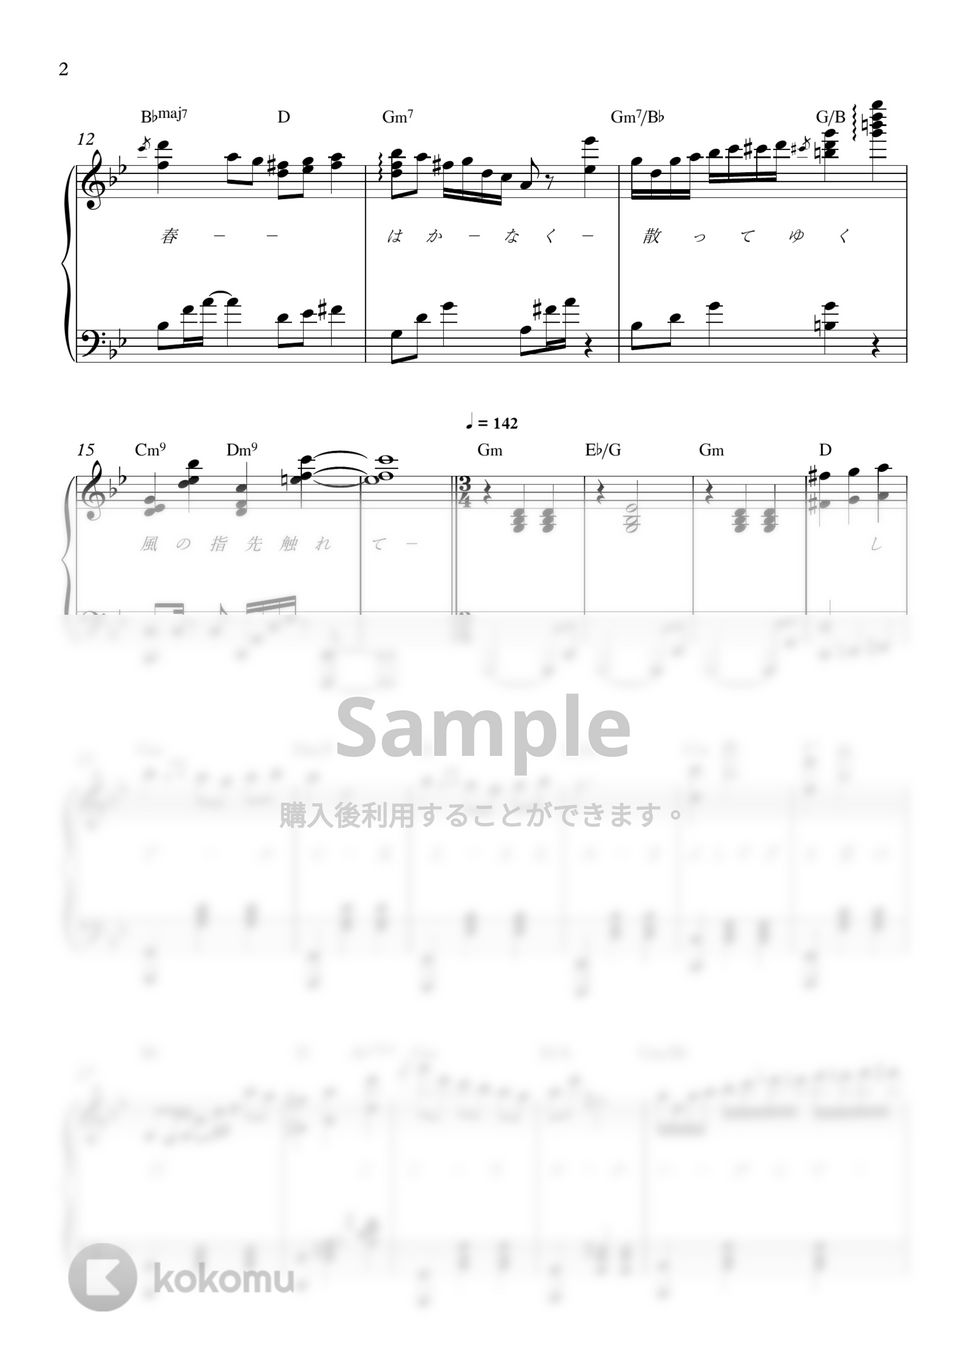 井上あずみ - めぐる季節 (ピアノ伴奏ver. / 歌詞付き) by Annan